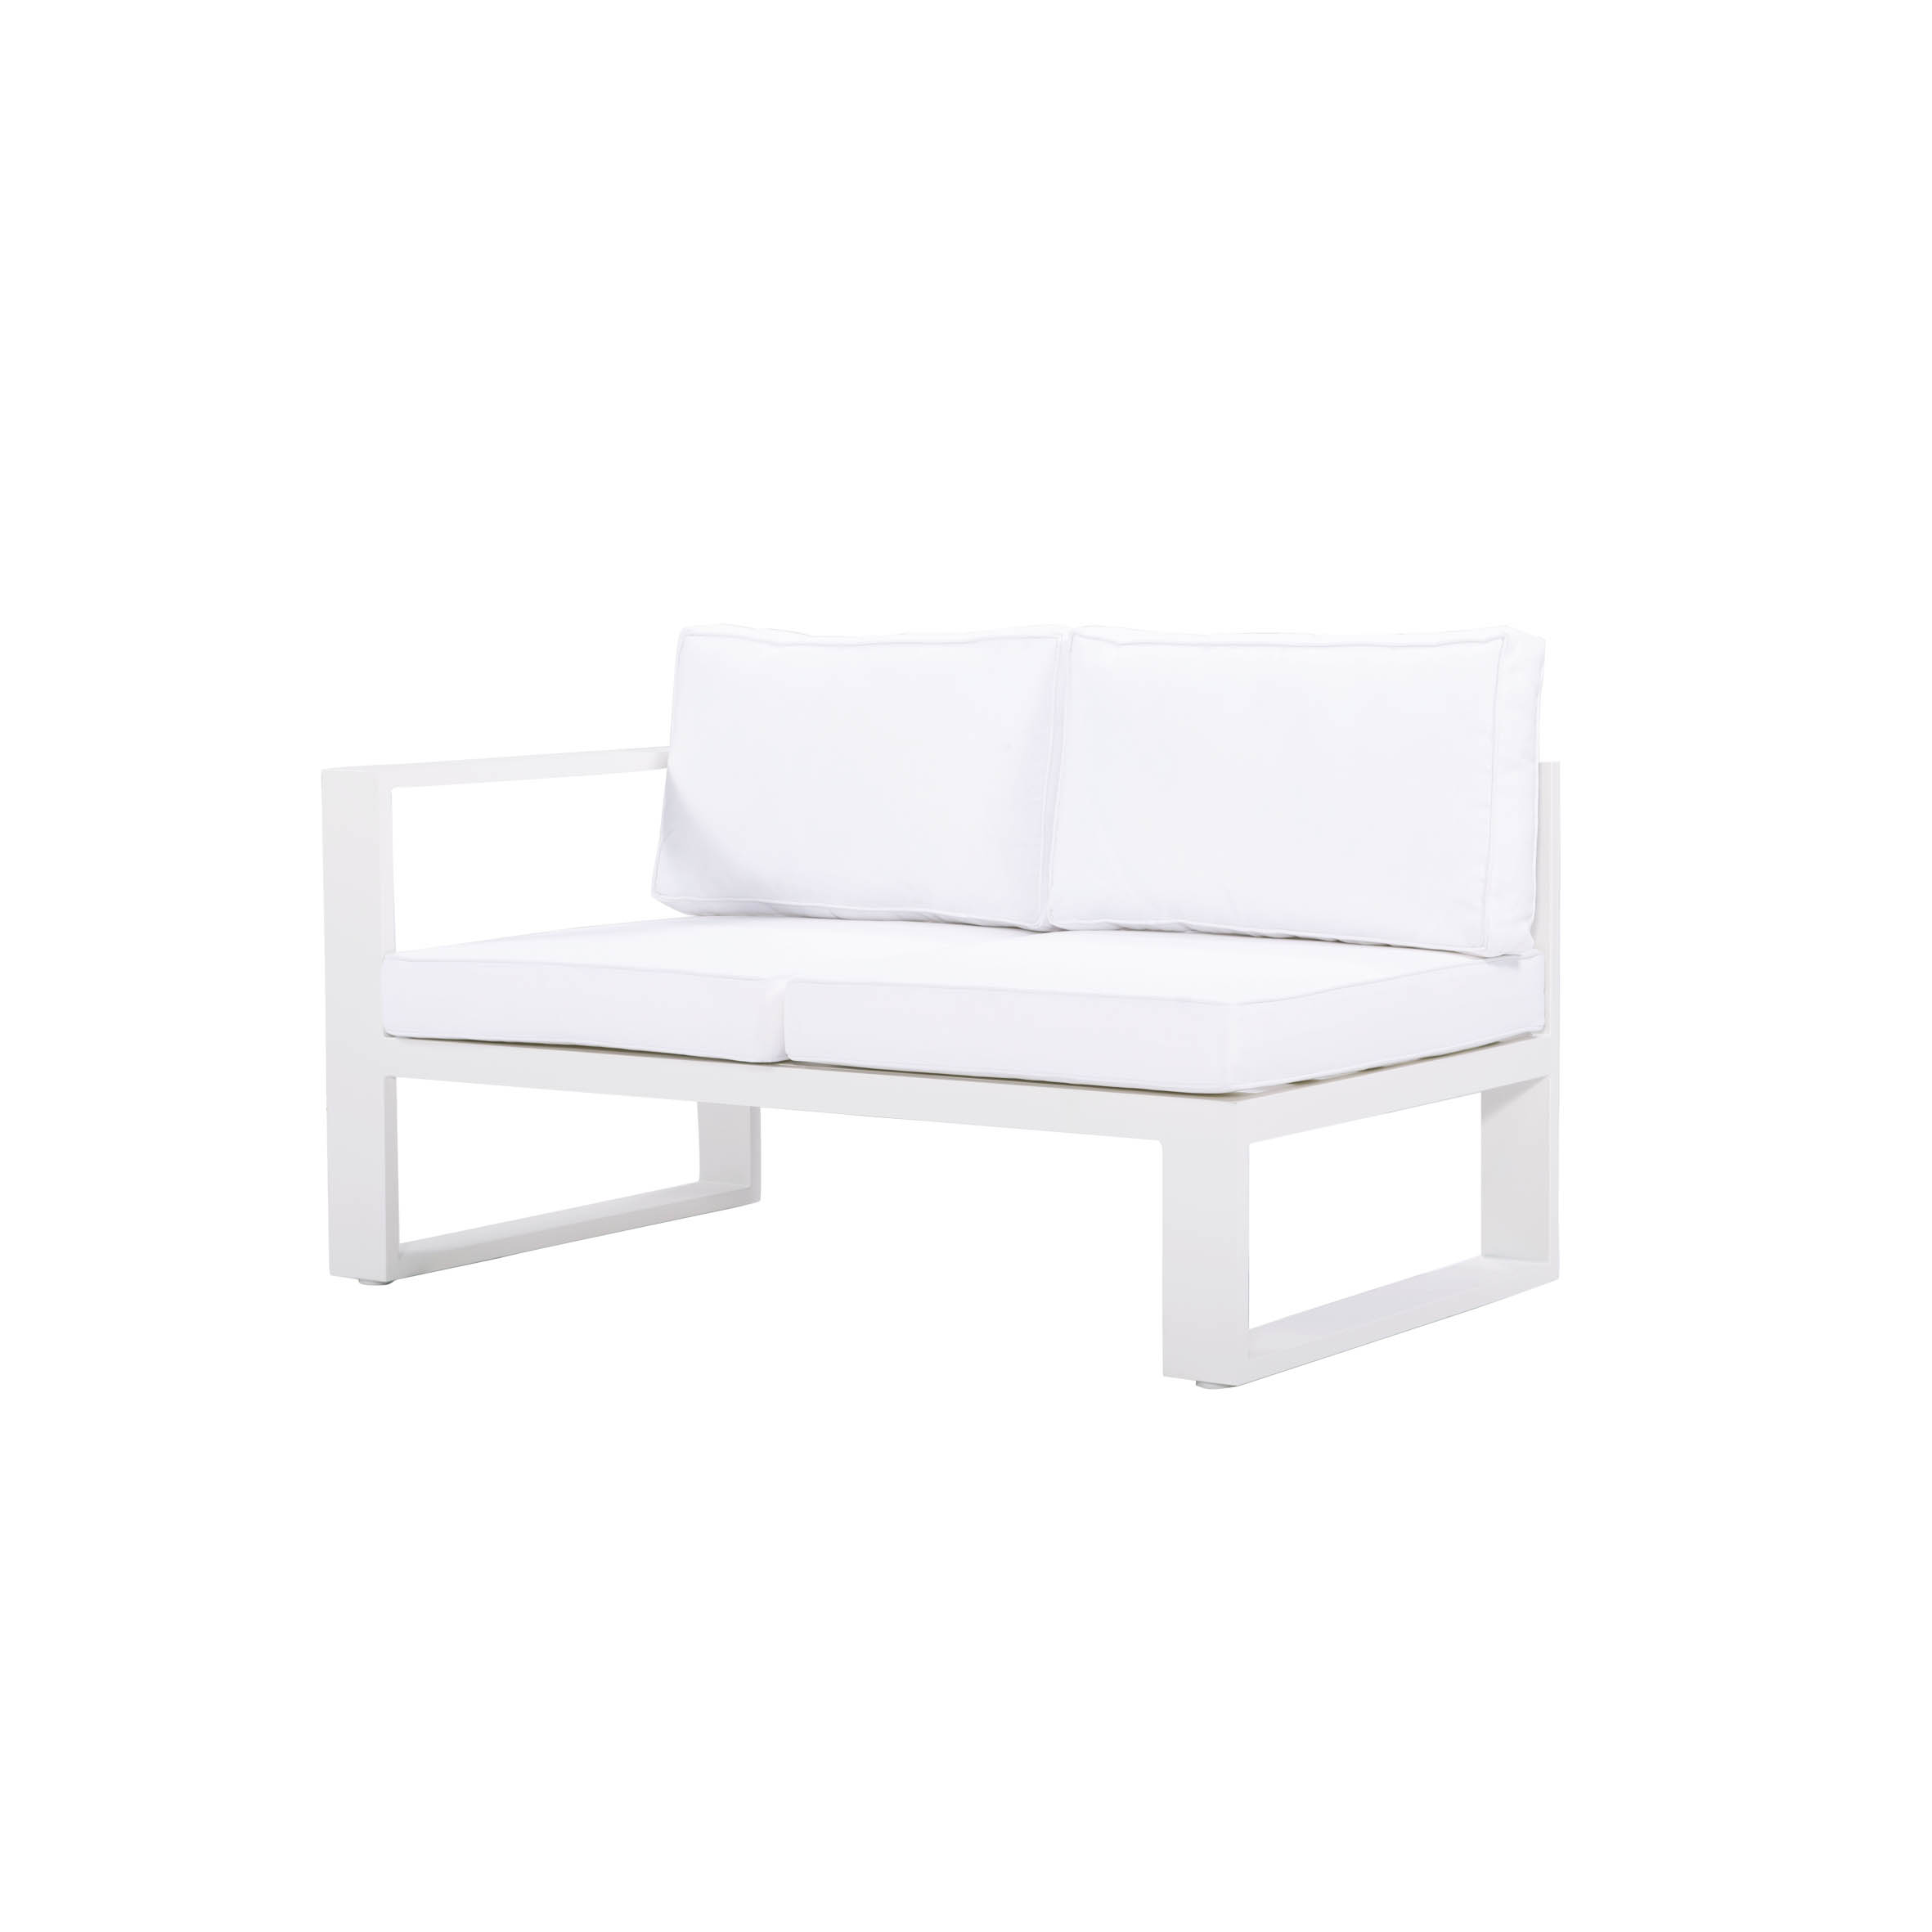 Winter kanang braso 2-seat sofa S4